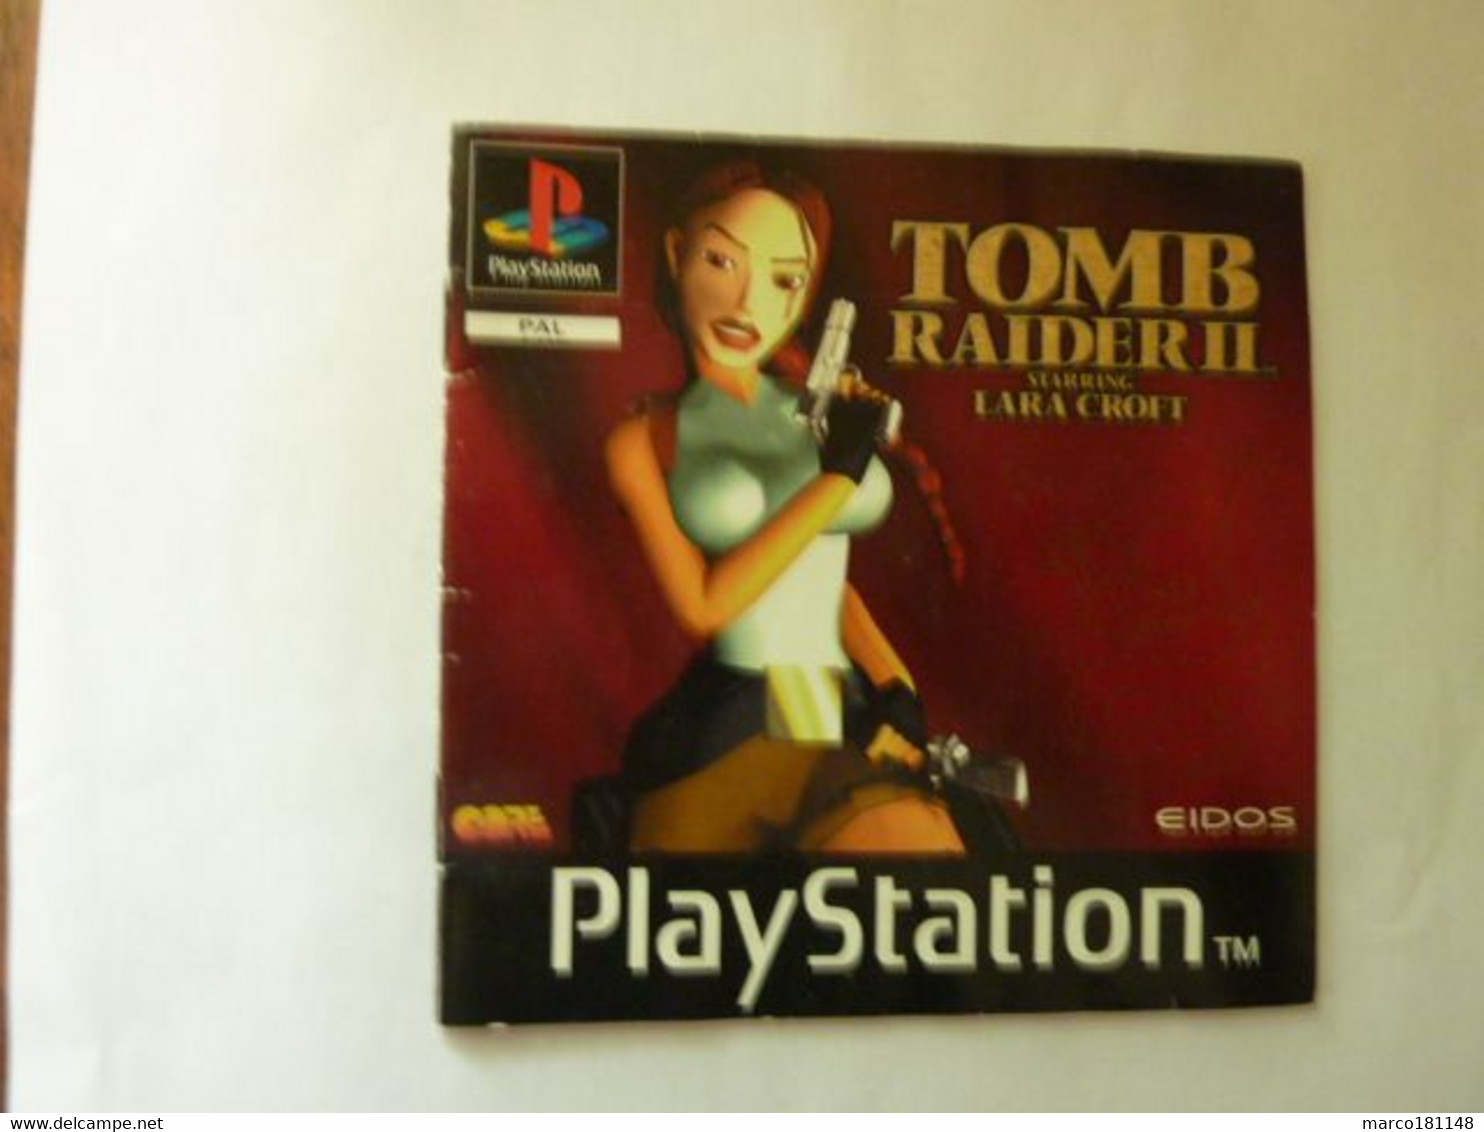 Livret PlayStation - TOMB RAIDER II Starring LARA CROFT - Accessories